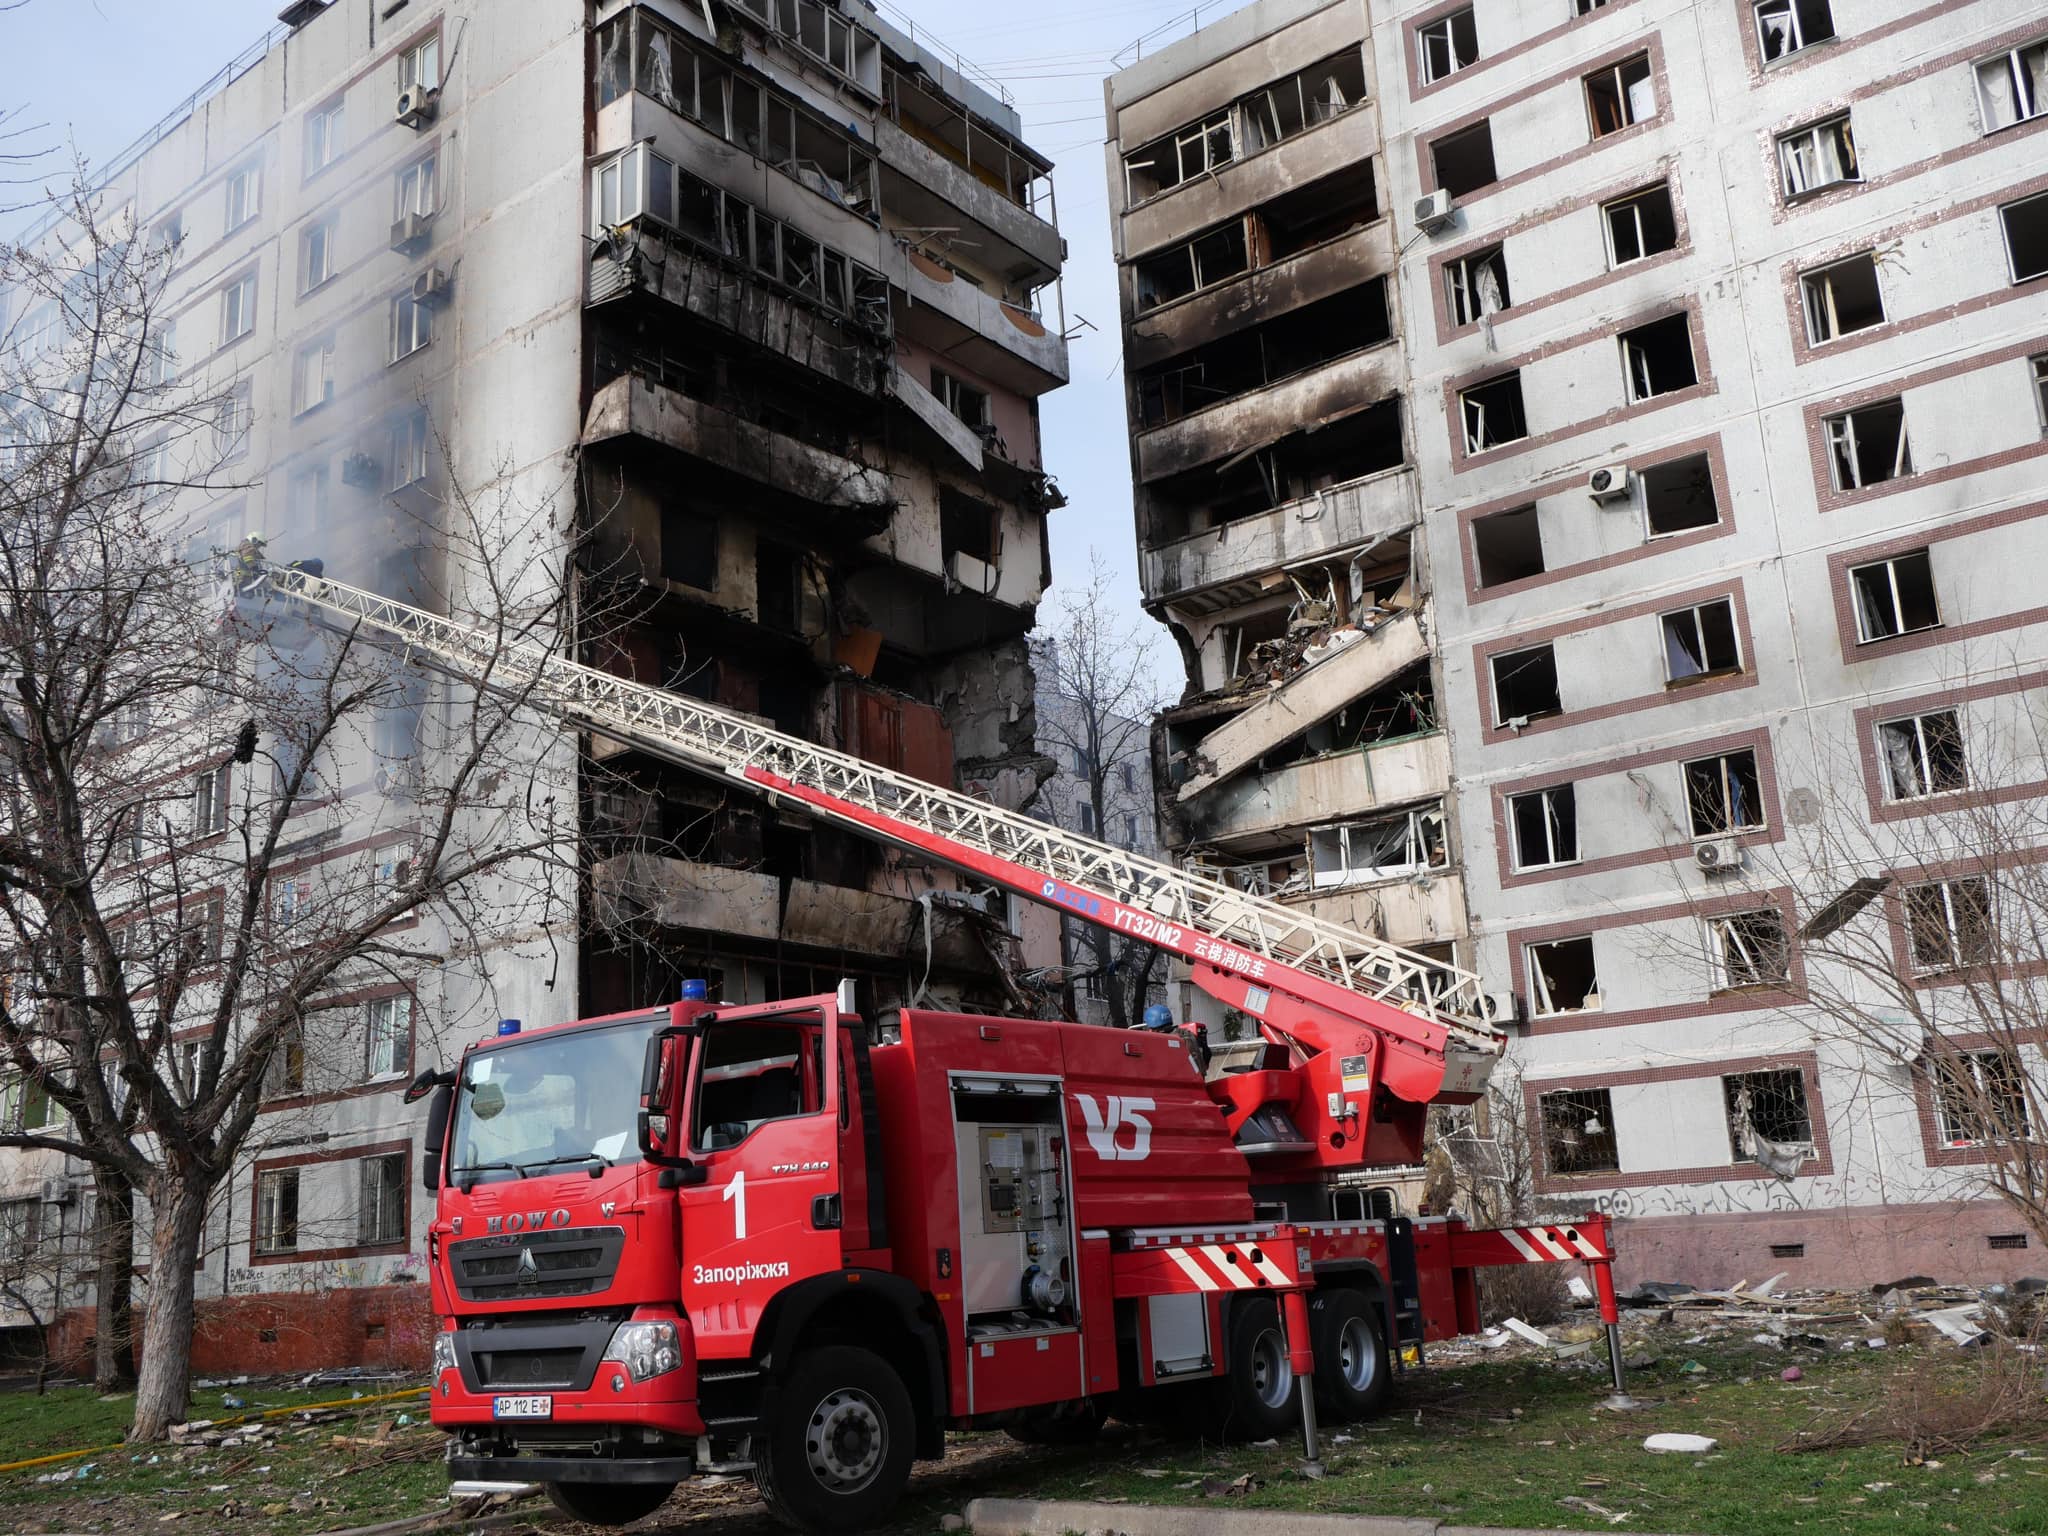 Рятувальна операція в Запоріжжі завершена: від російської атаки загалом 34 людини постраждали, з них троє дітей, одна людина померла (ФОТО) 12